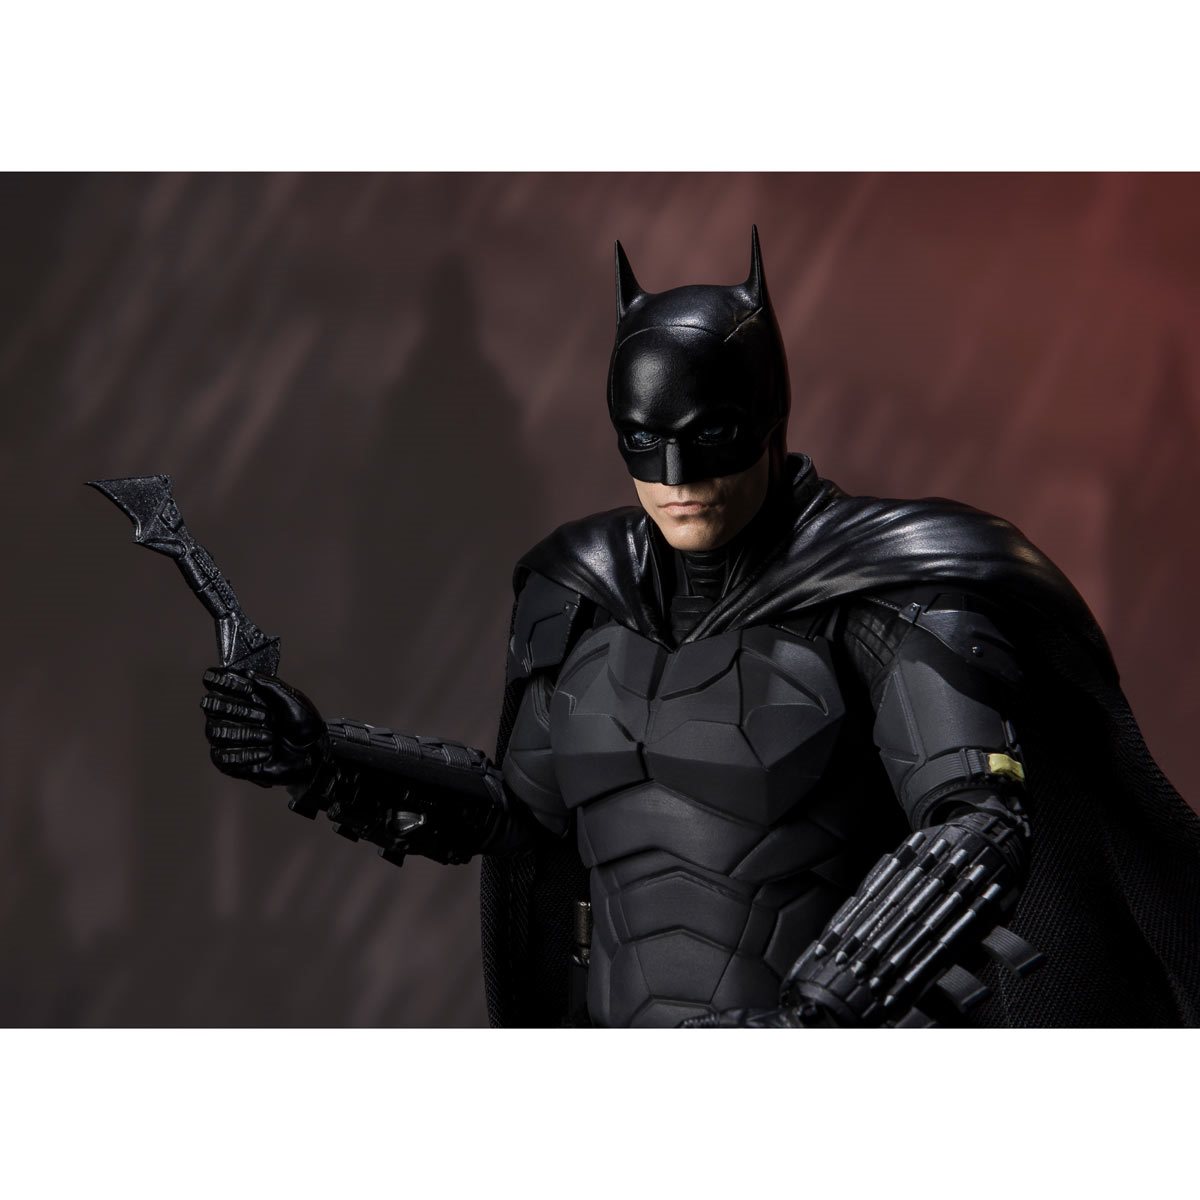 S.H.Figuarts Batman Justice League Bruce Wayne SHF Action Figure Toy 6'' New 